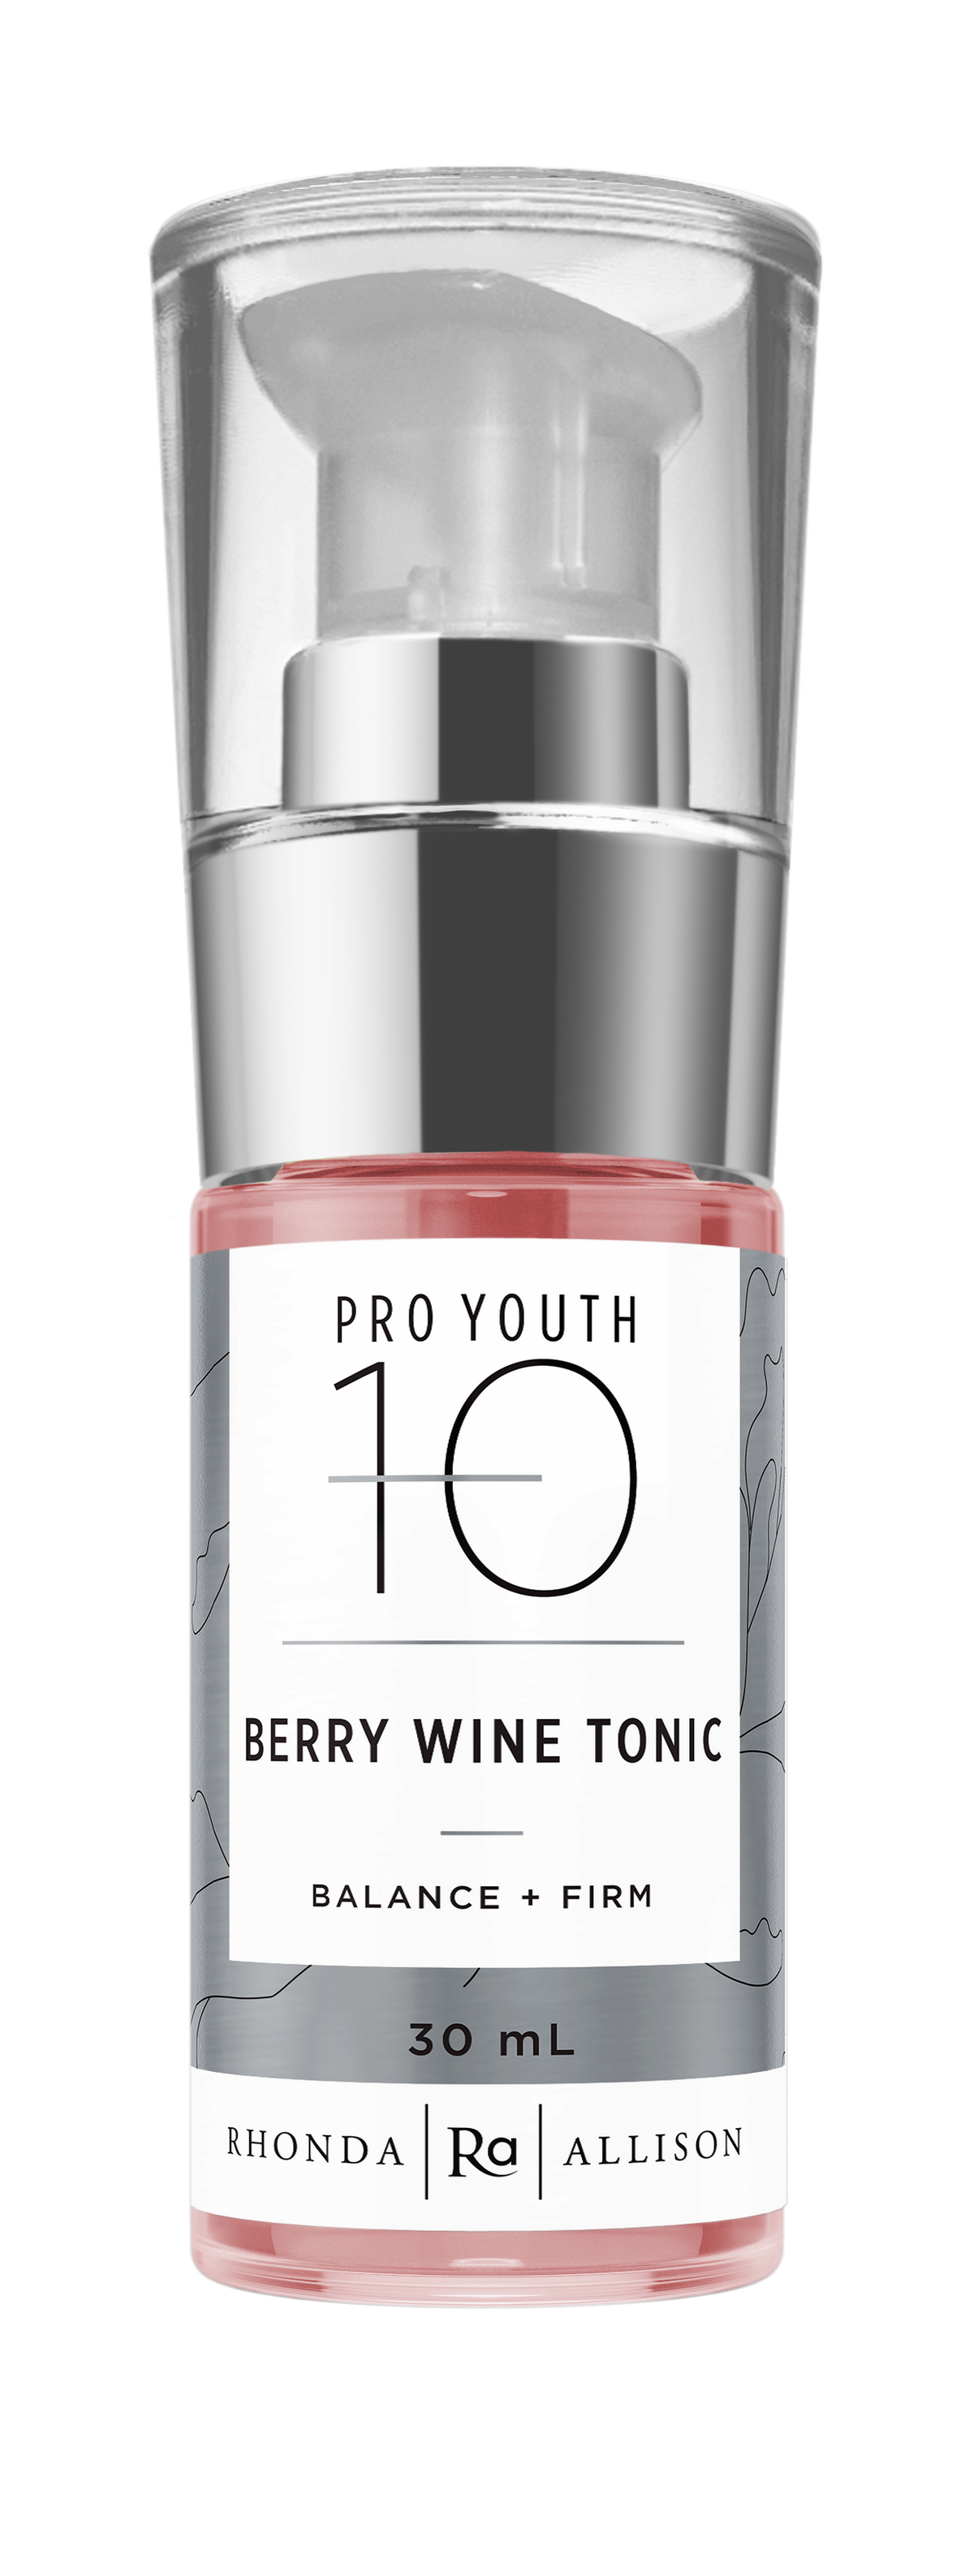 Berry  Wine Tonic